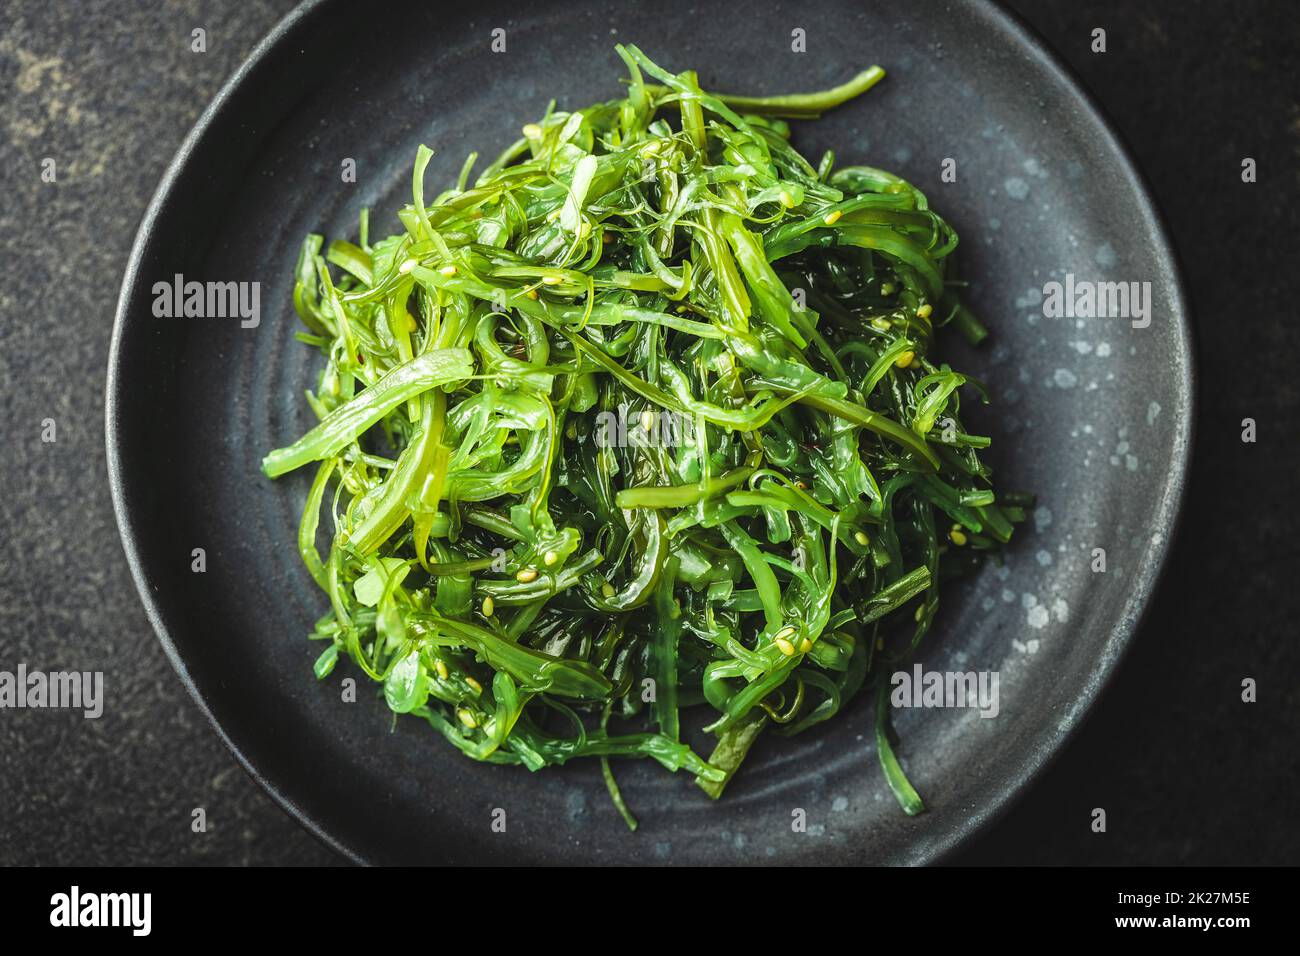 Alga Wakame Wakame Seaweed Stock Photo - Download Image Now - Asia